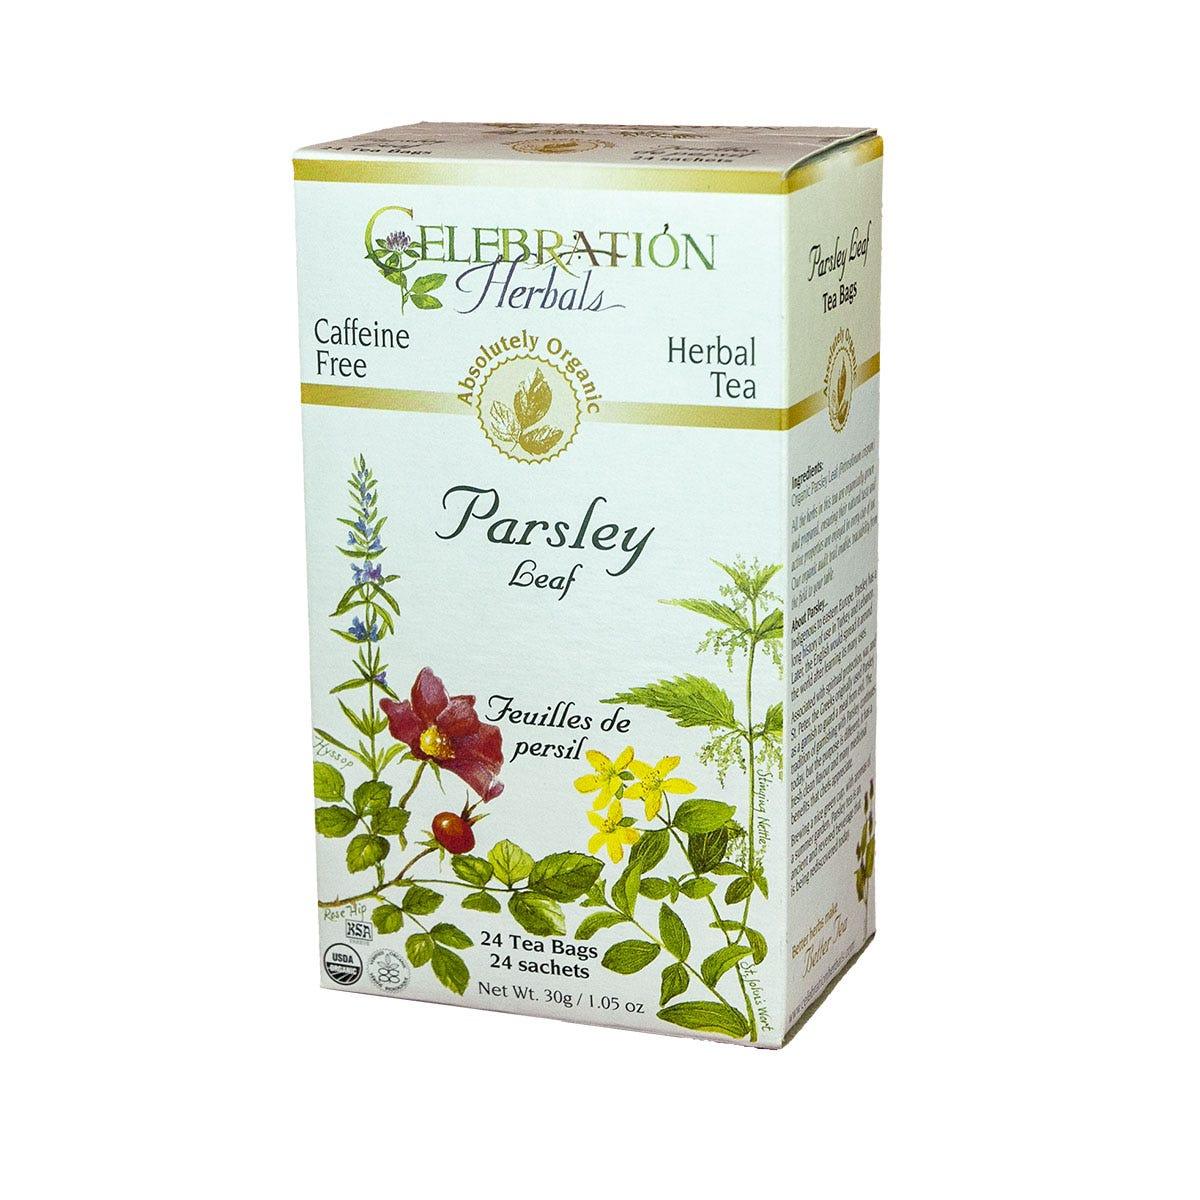 Celebration Herbals Organic Parsley Leaf Tea 24 bags